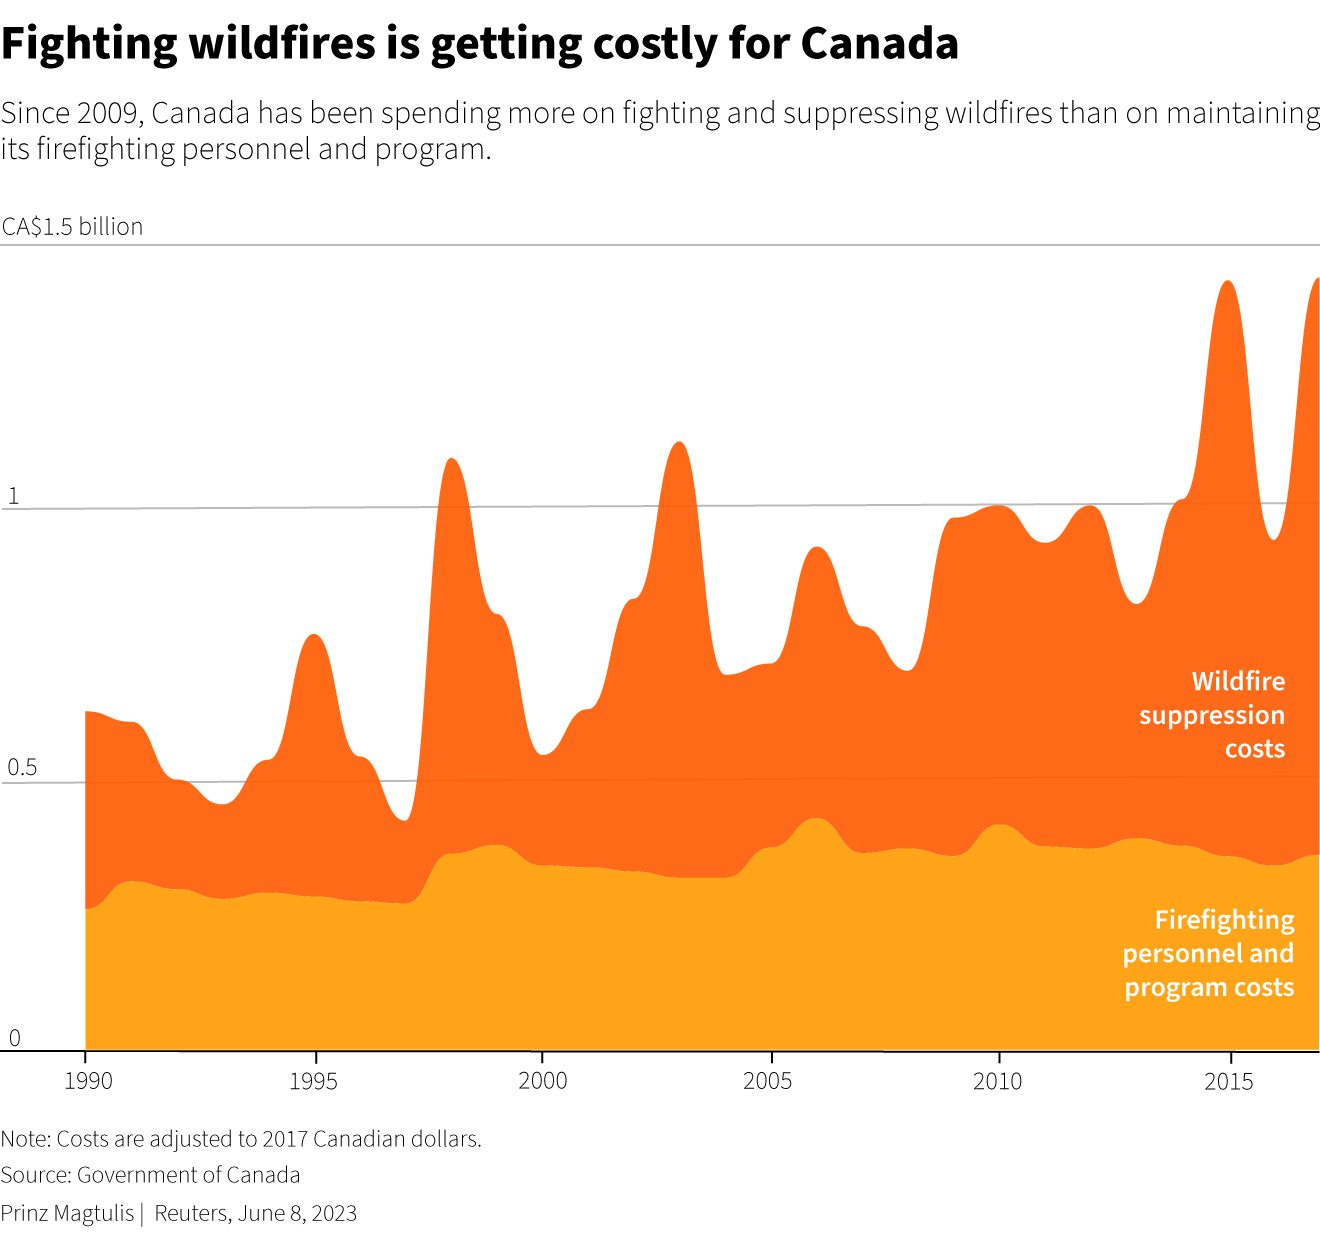 Dal 2009, il Canada ha speso di più per combattere ed estinguere gli incendi che per mantenere il personale antincendio e il suo programma.